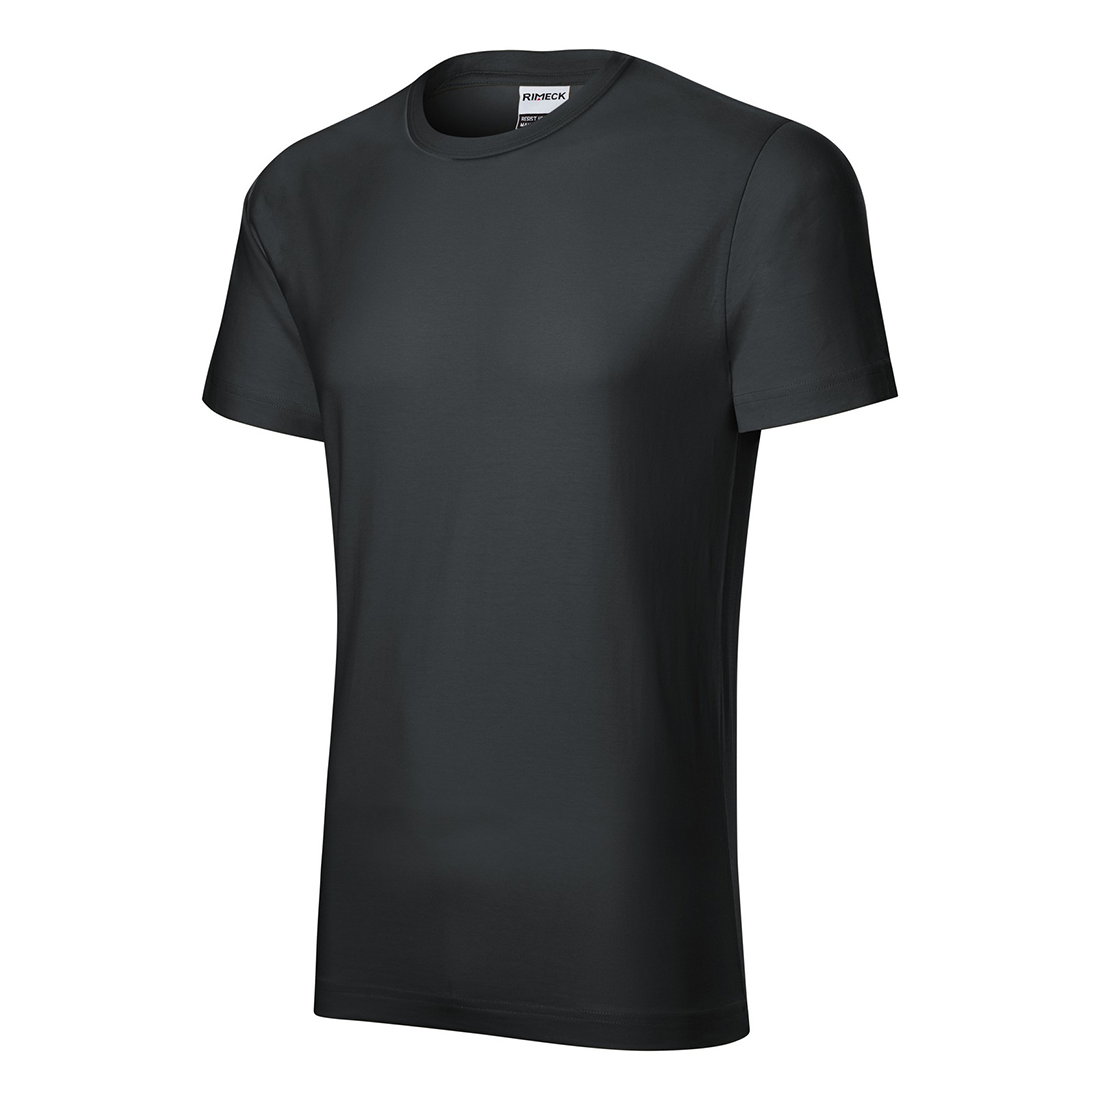 T-shirt en coton prélavé pour homme - Les vêtements de protection